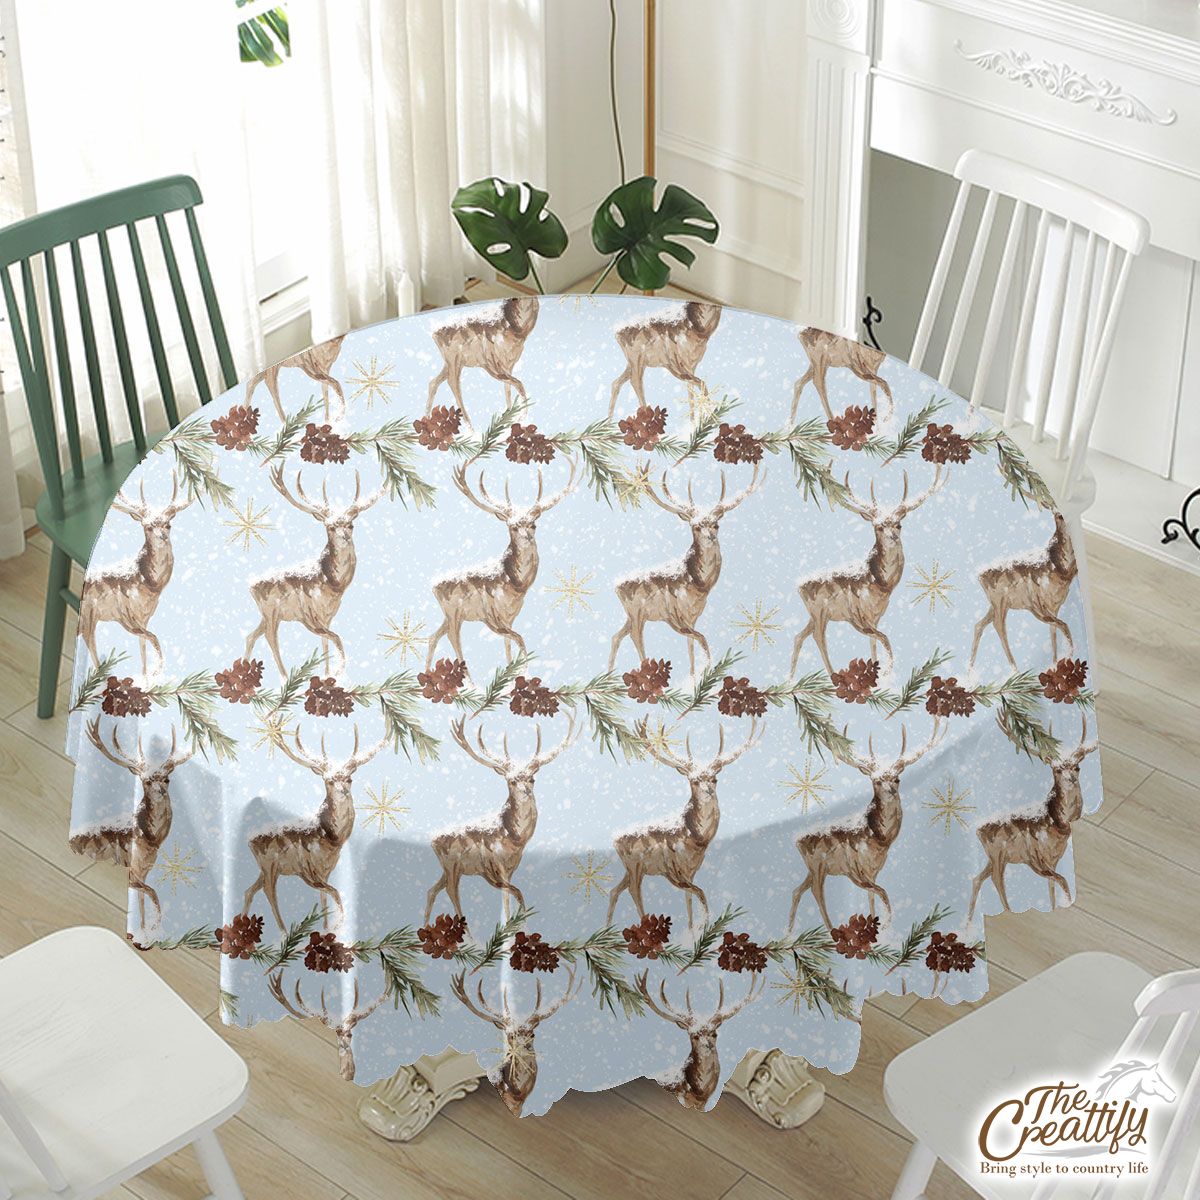 Reindeer, Christmas Reindeer And Pine Tree Branch Waterproof Tablecloth